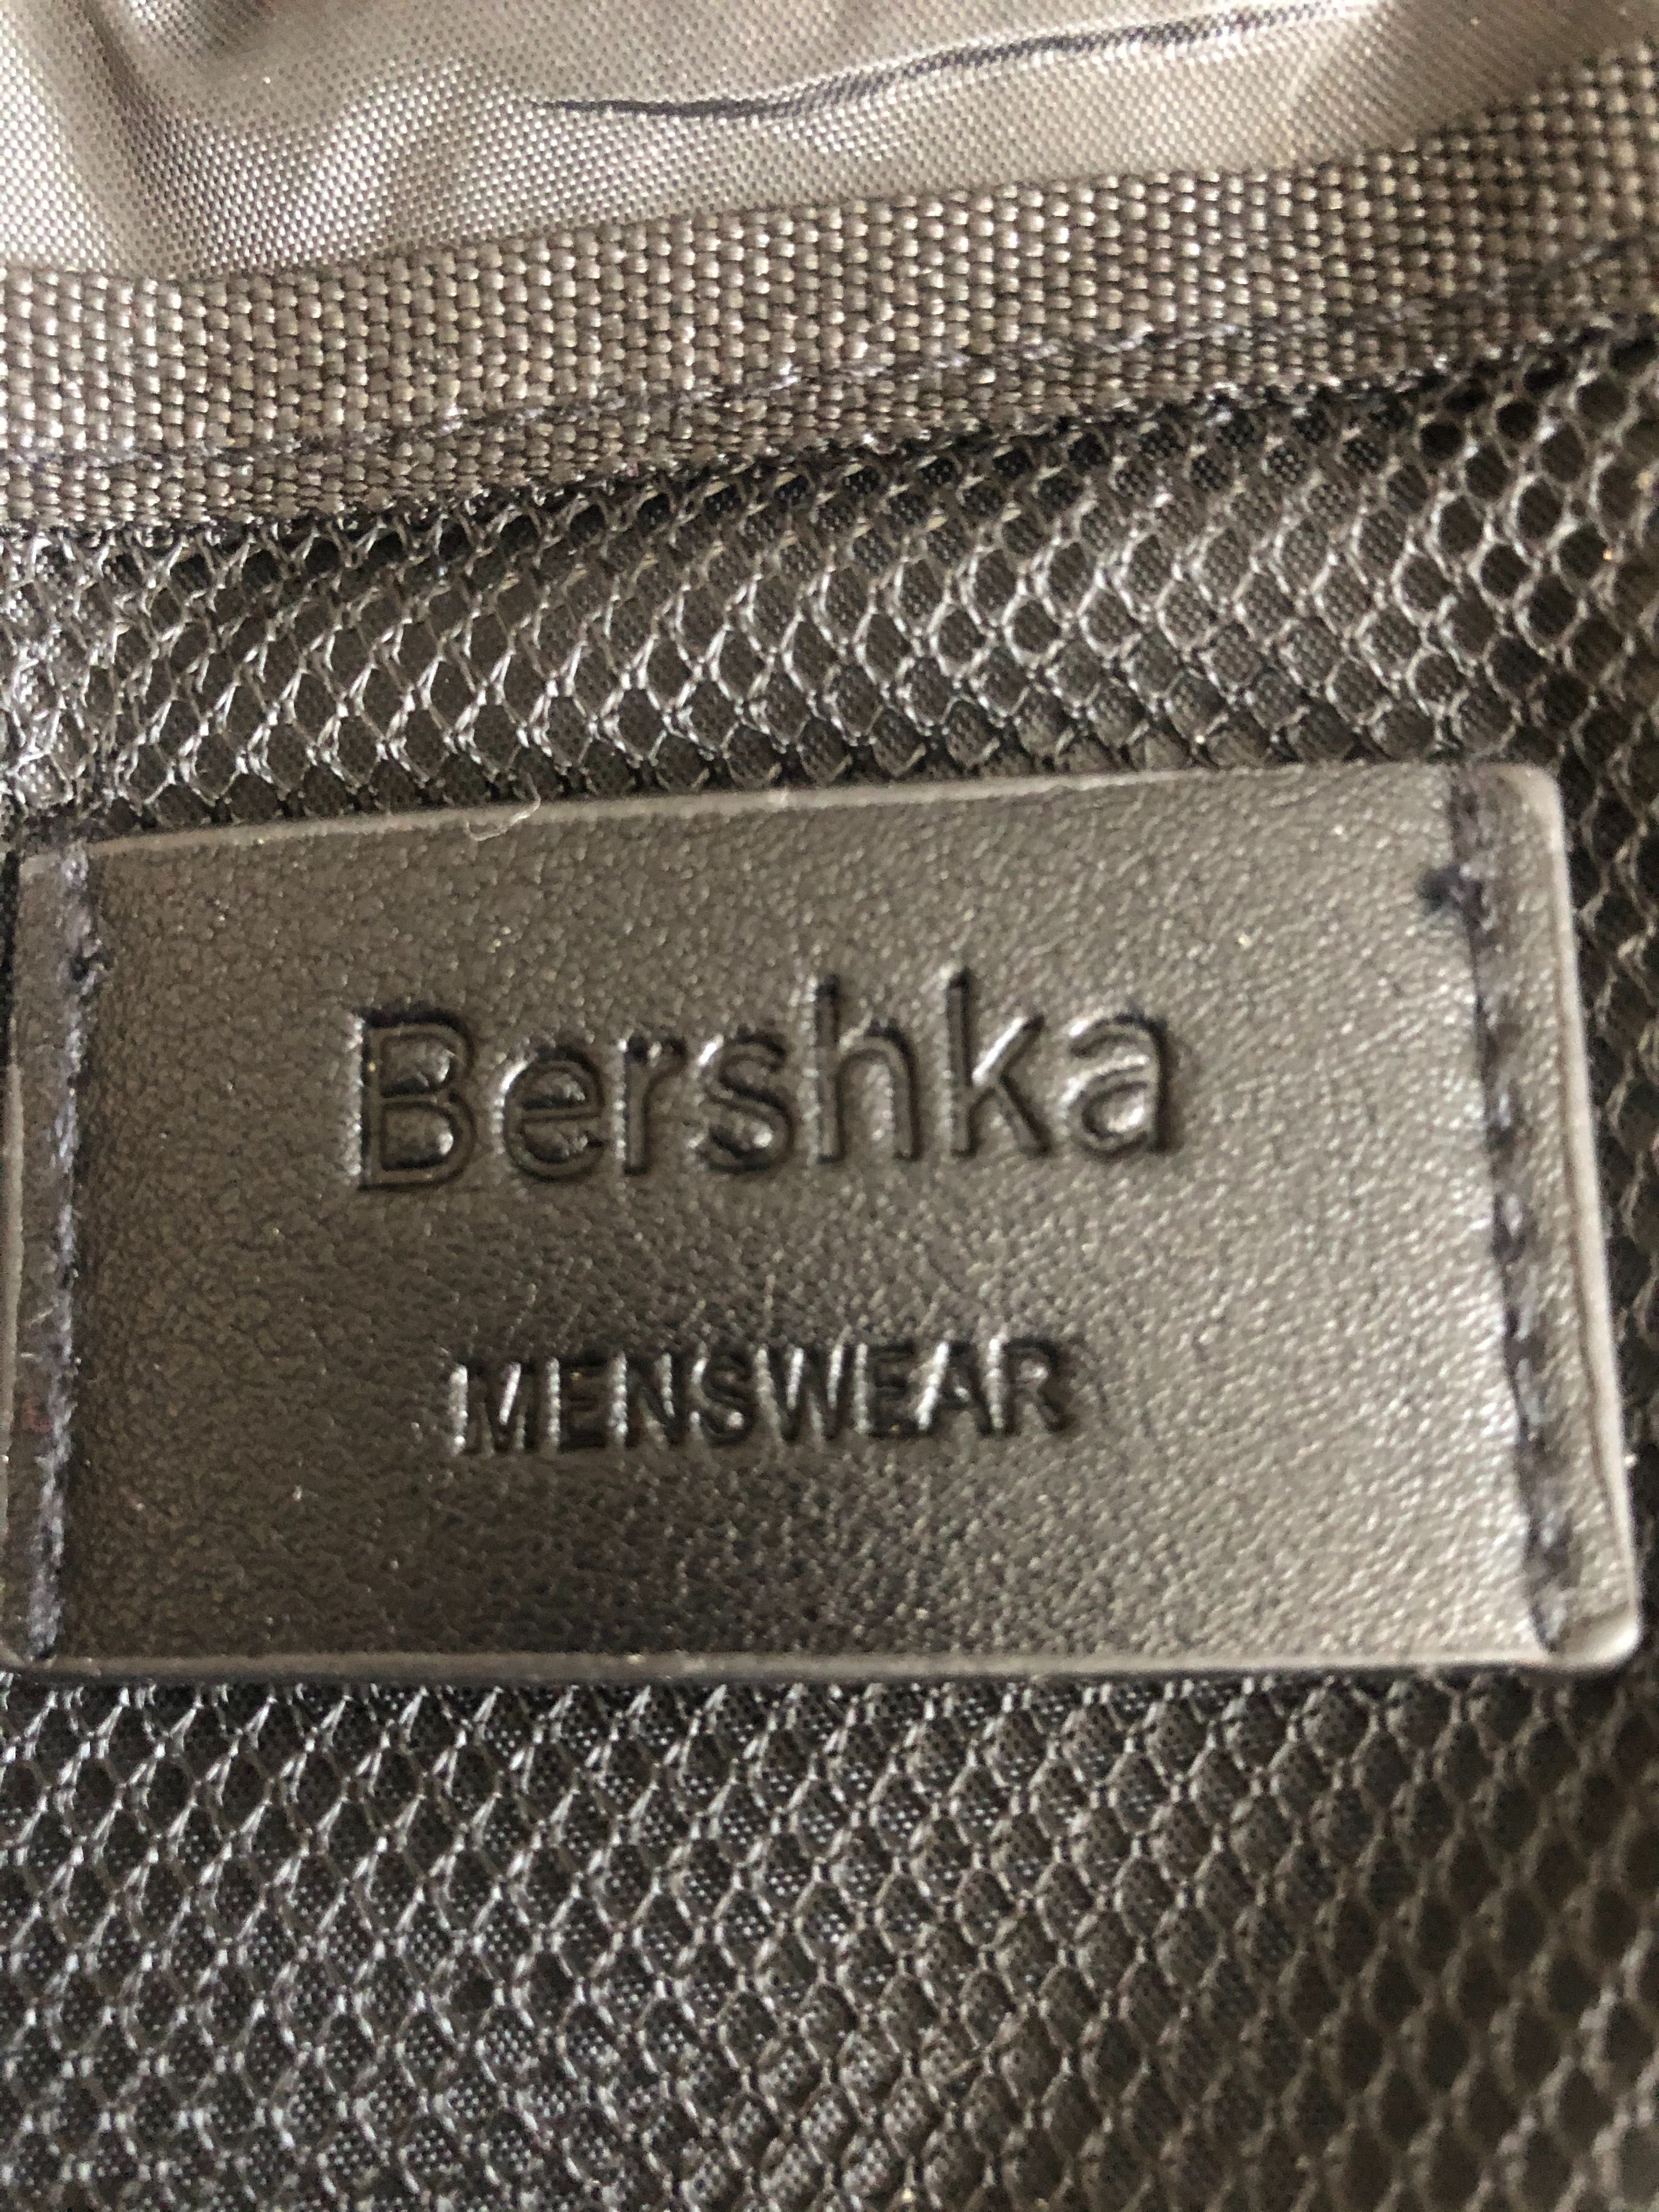 Мужская сумка Bershka, оригинал  чёрный цвет     Новая